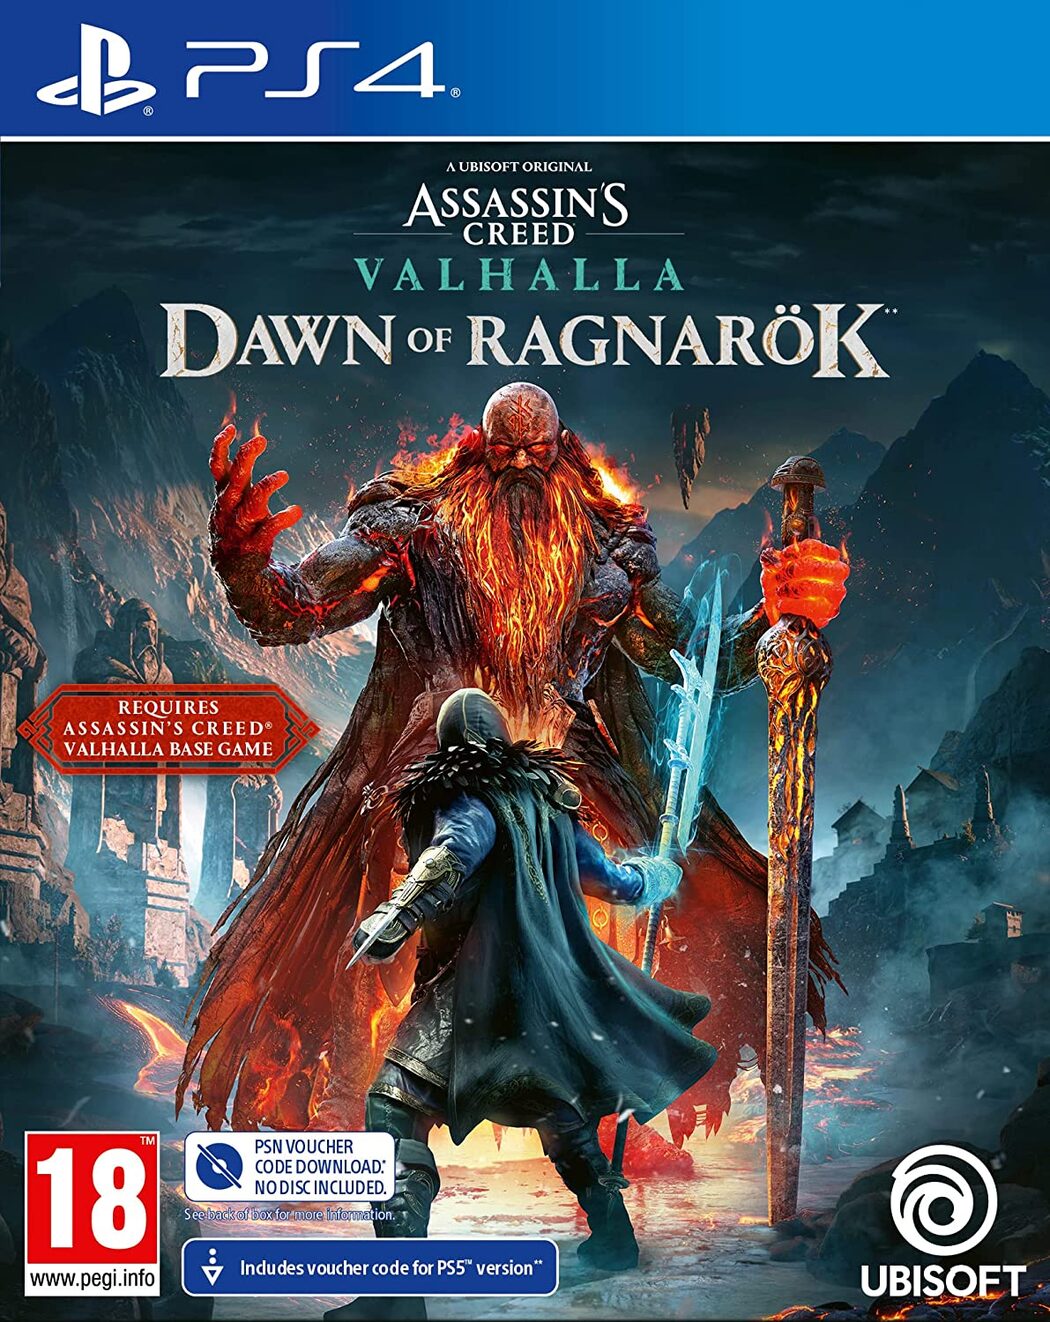 Assassin's Creed Valhalla: Dawn of Ragnarok DLC